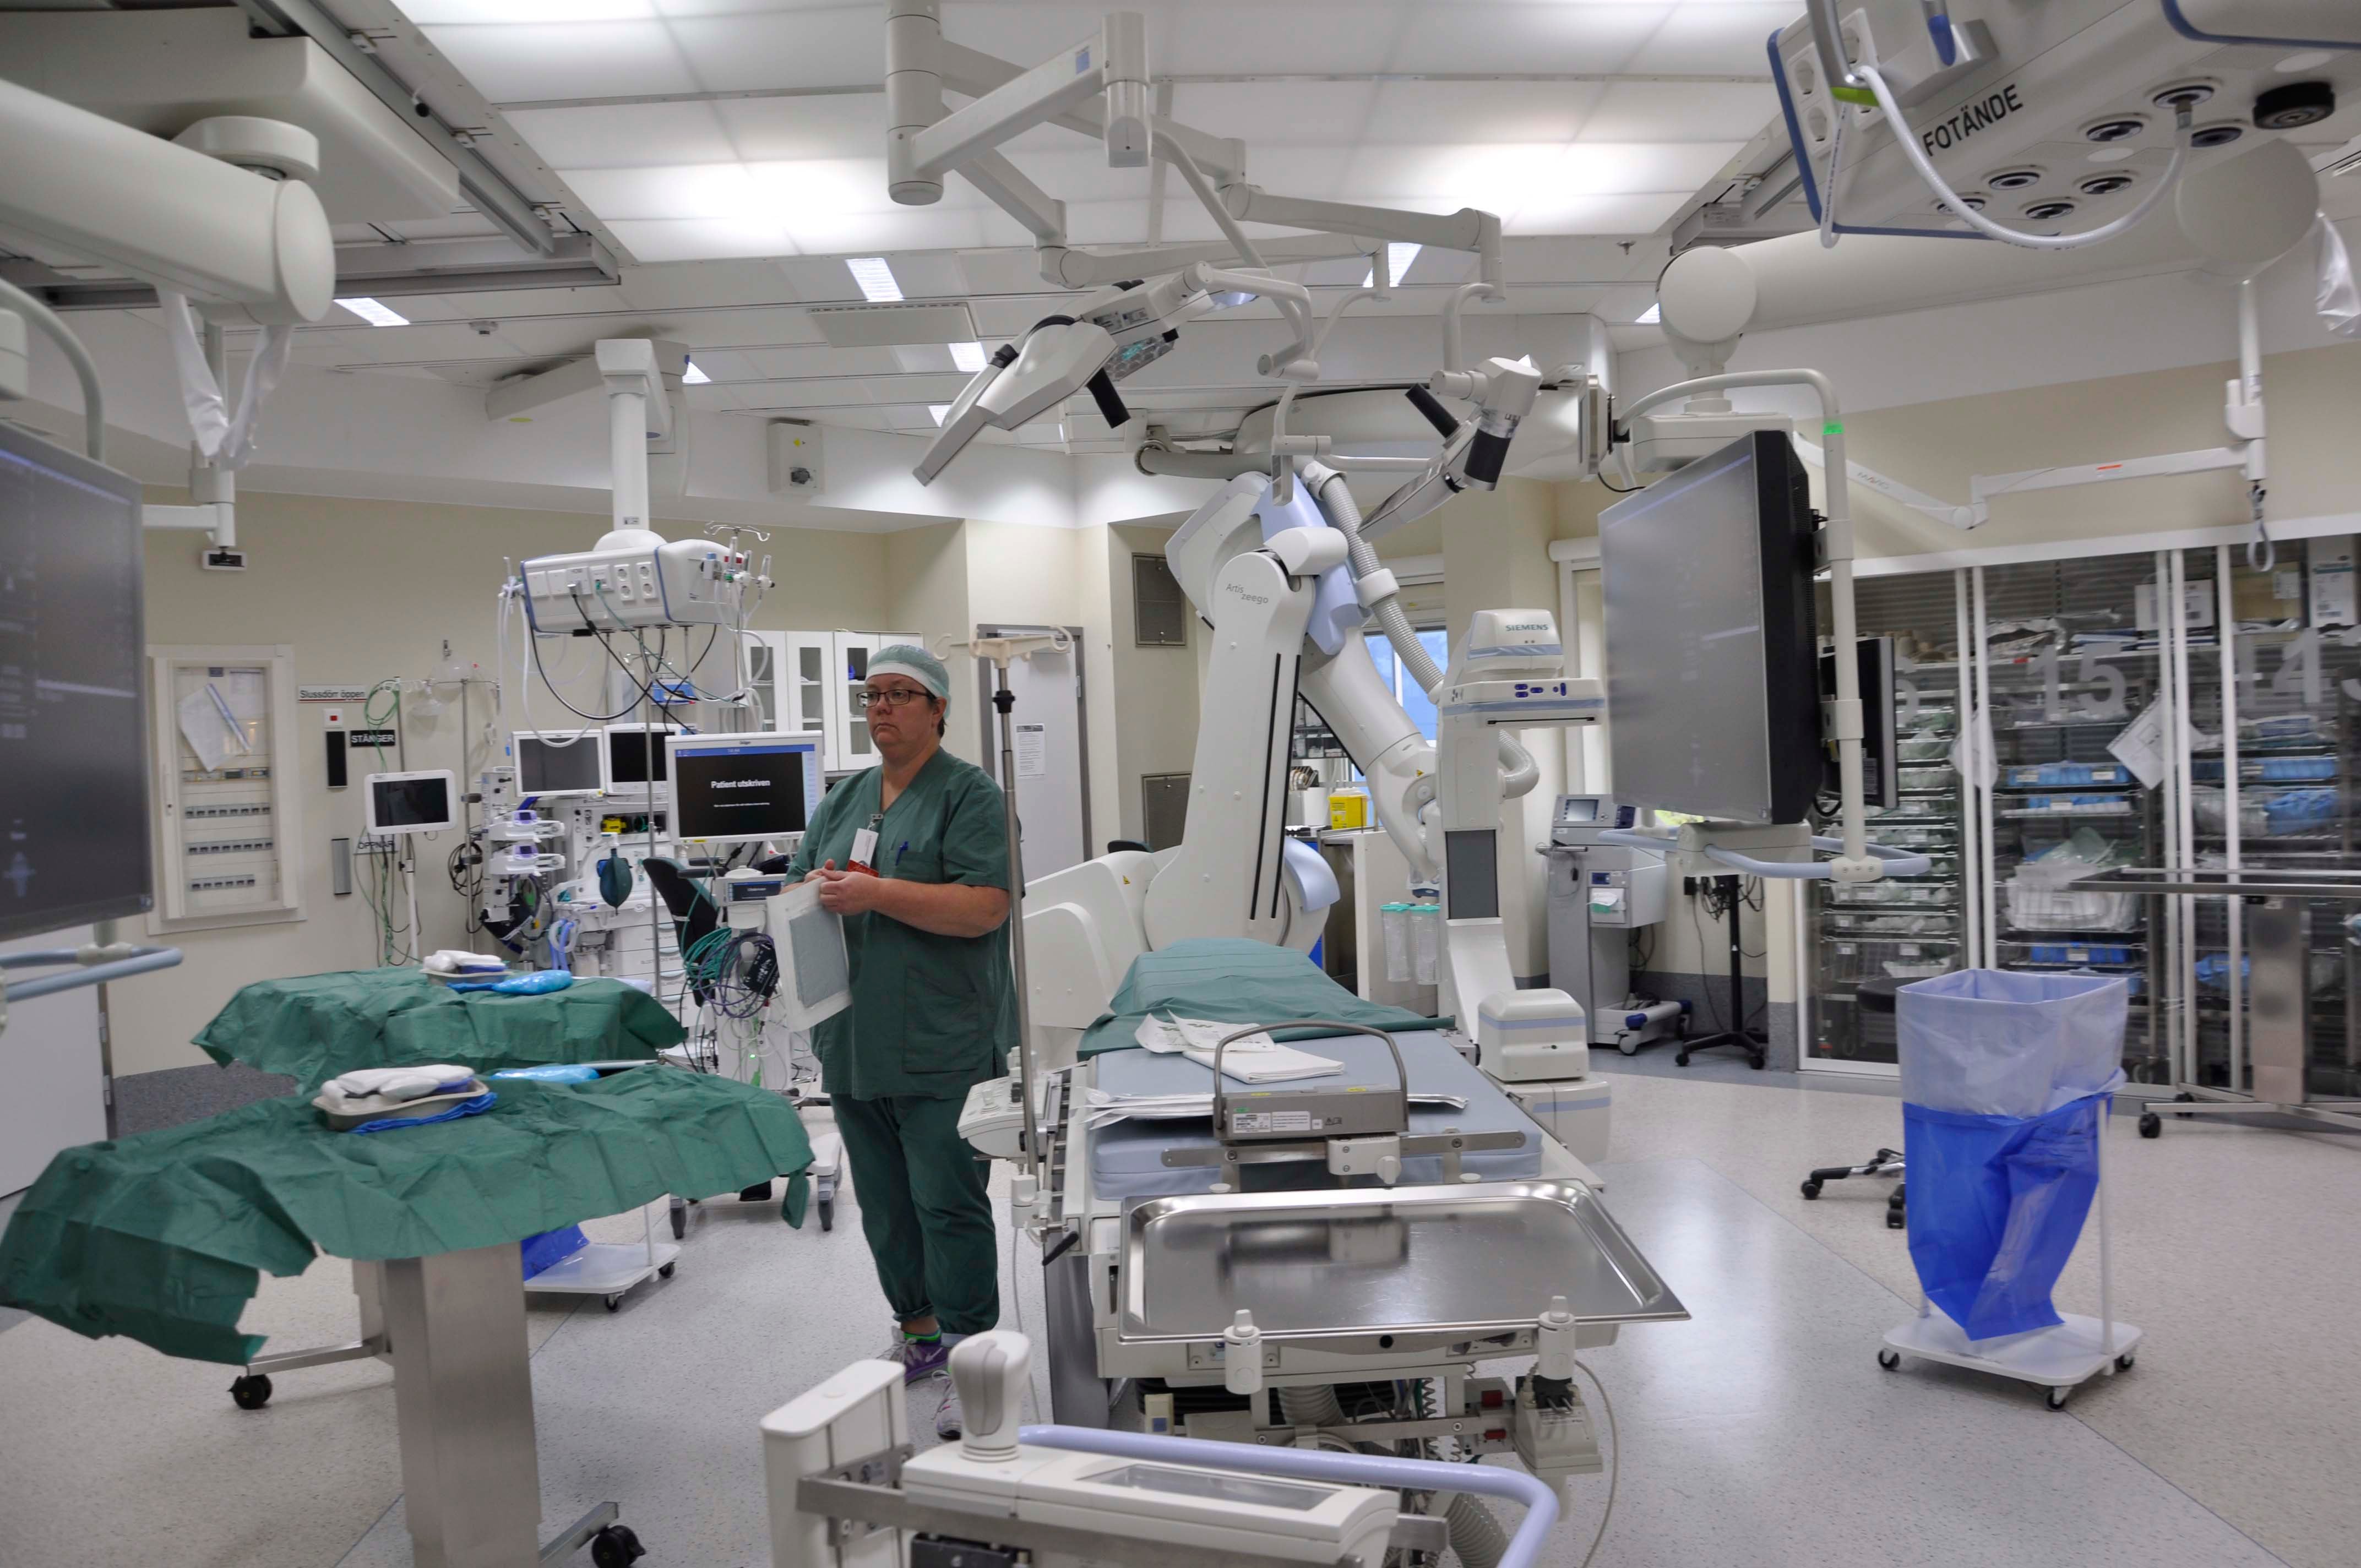 Sundhedspersonale står og gør klar til operation på operationsstue